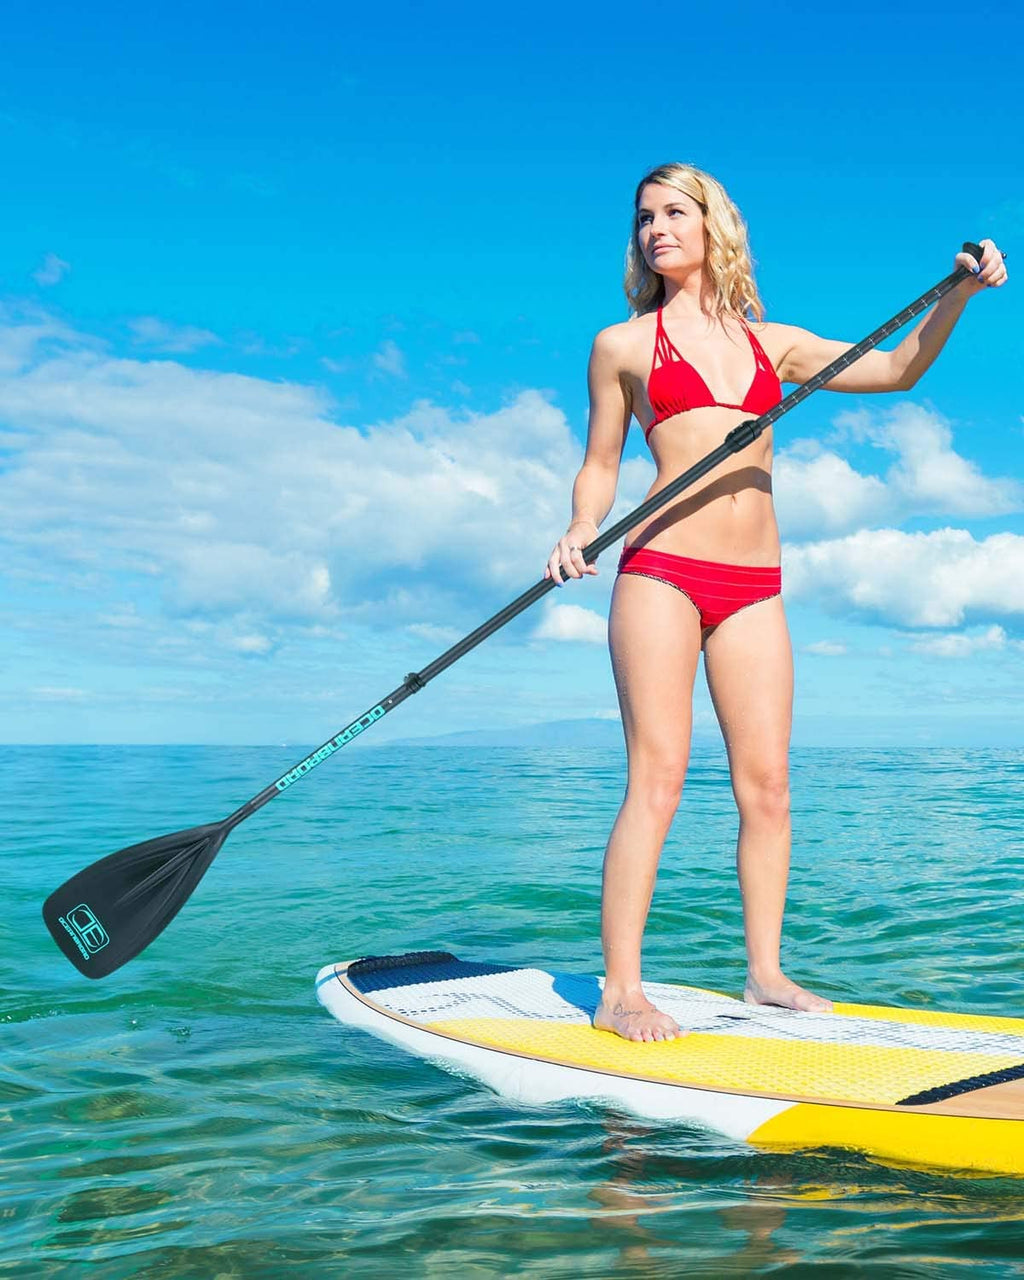 OCEANBROAD SUP Paddle Board Paddle Adjustable Carbon Fiber Shaft Stand up Paddle, Black